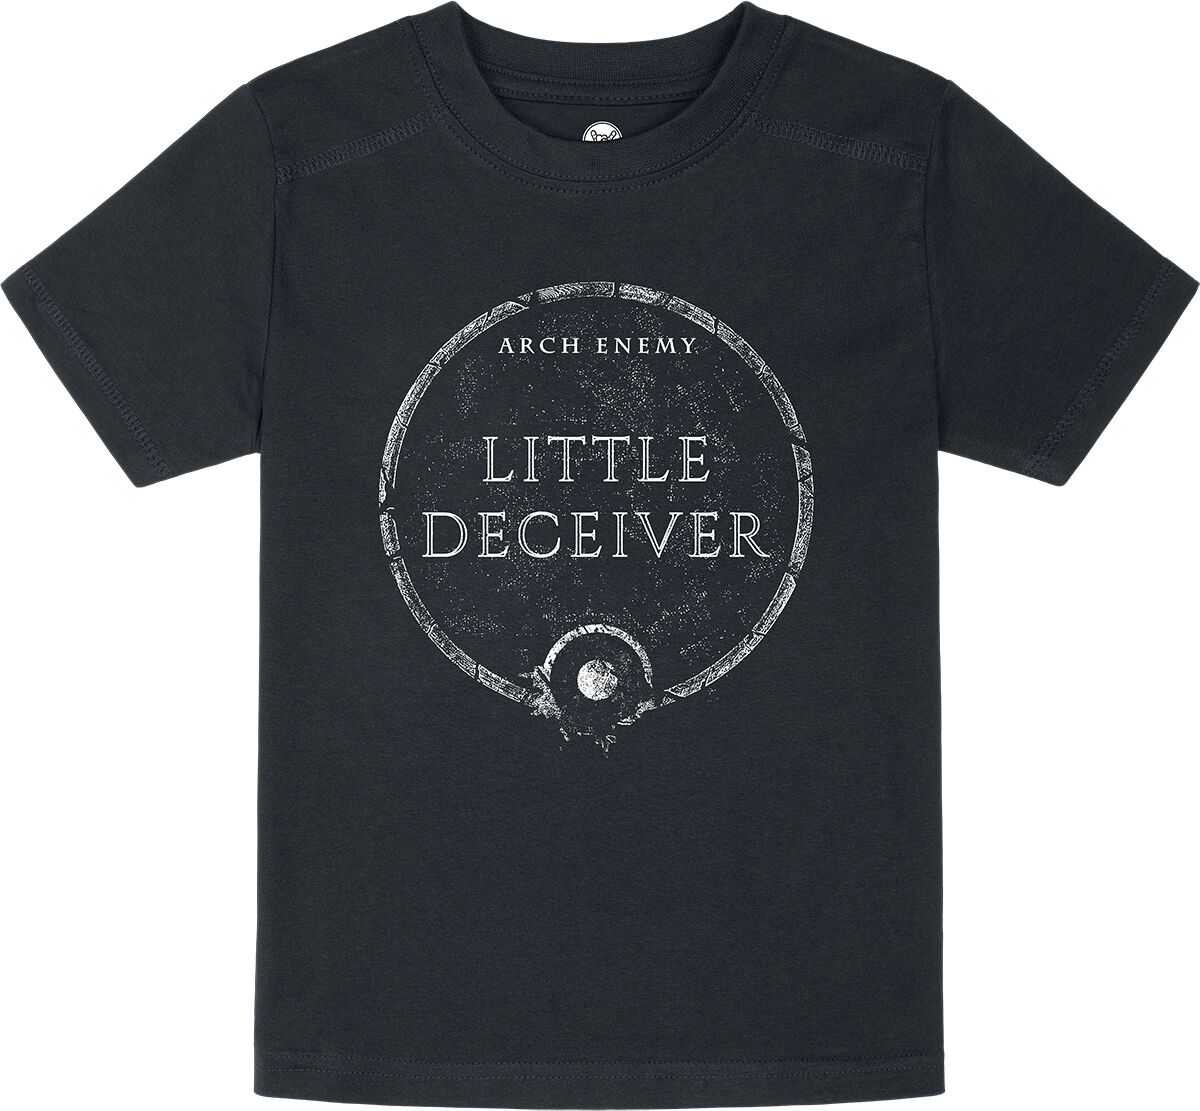 Arch Enemy T-Shirt für Kinder - Metal Kids - Little Deceiver - für Mädchen & Jungen - schwarz  - Lizenziertes Merchandise!